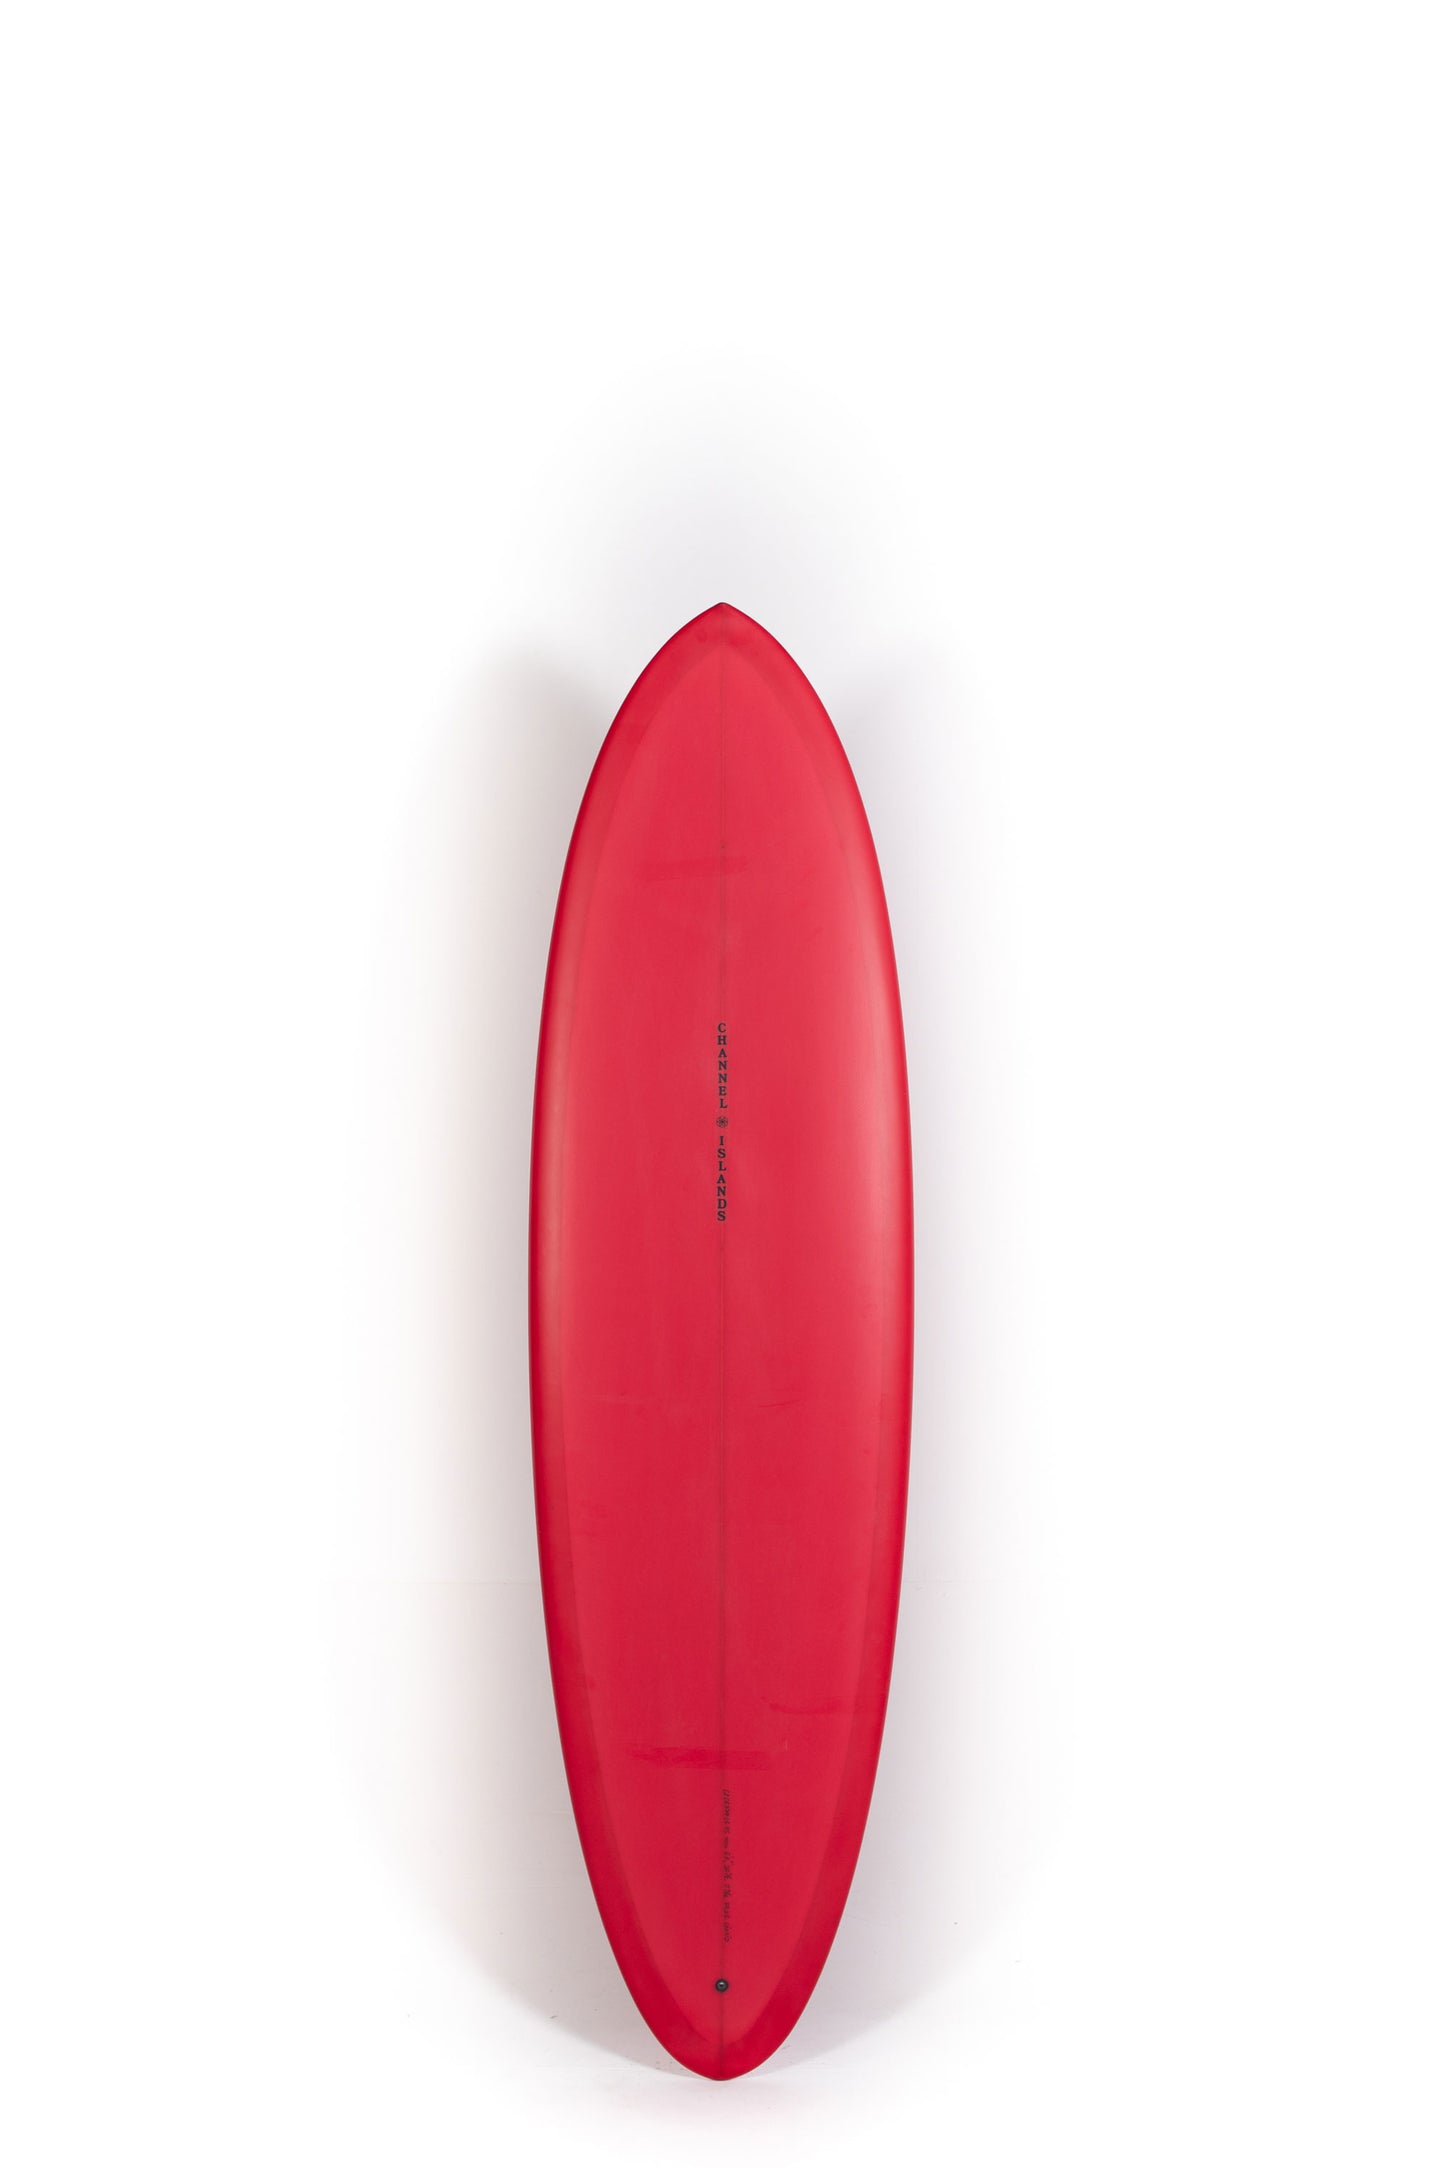 Pukas Surf Shop - Channel Islands - CI MID - 6'6" x 20 1/2 x 2 9/16 - 37,8L - CI26879